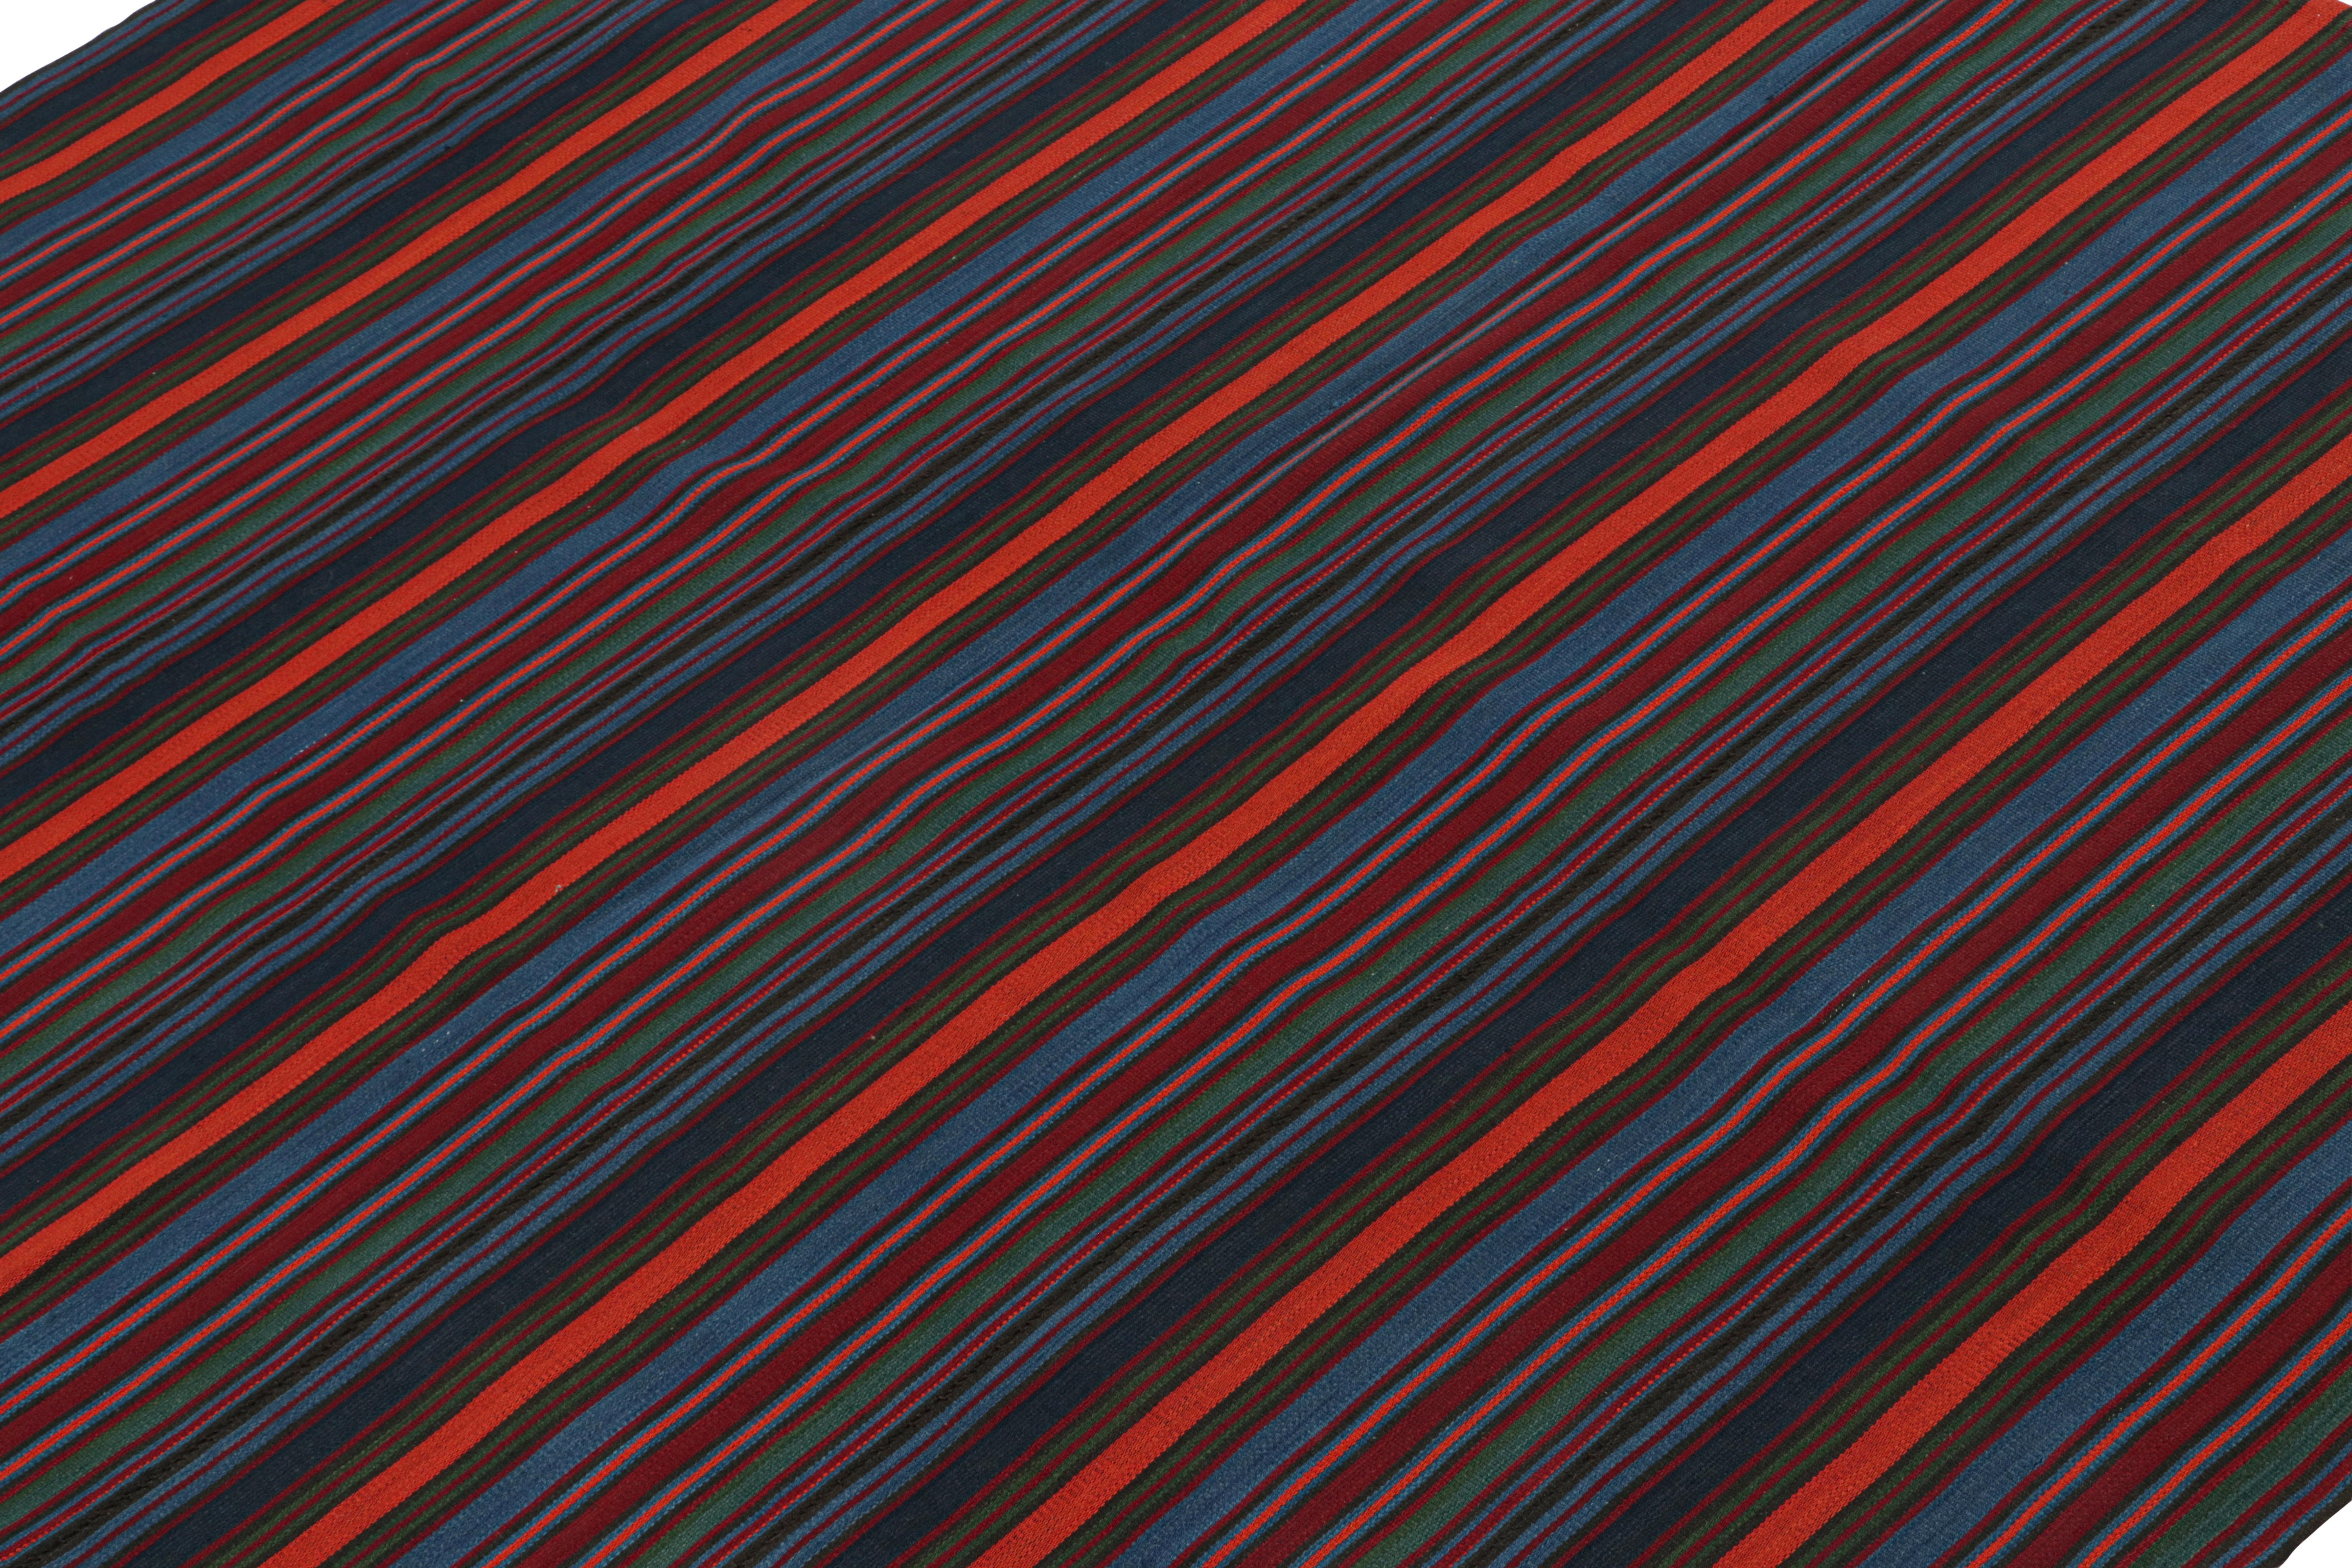 Ce Rug & Kilim 6x7 Bidjar Persan est un tapis tribal unique pour l'époque, tissé en laine vers 1950-1960.

Sur le Design :

Le champ est fait de rayures, et plus particulièrement de rayures finement tissées qui s'alternent pour donner un aspect